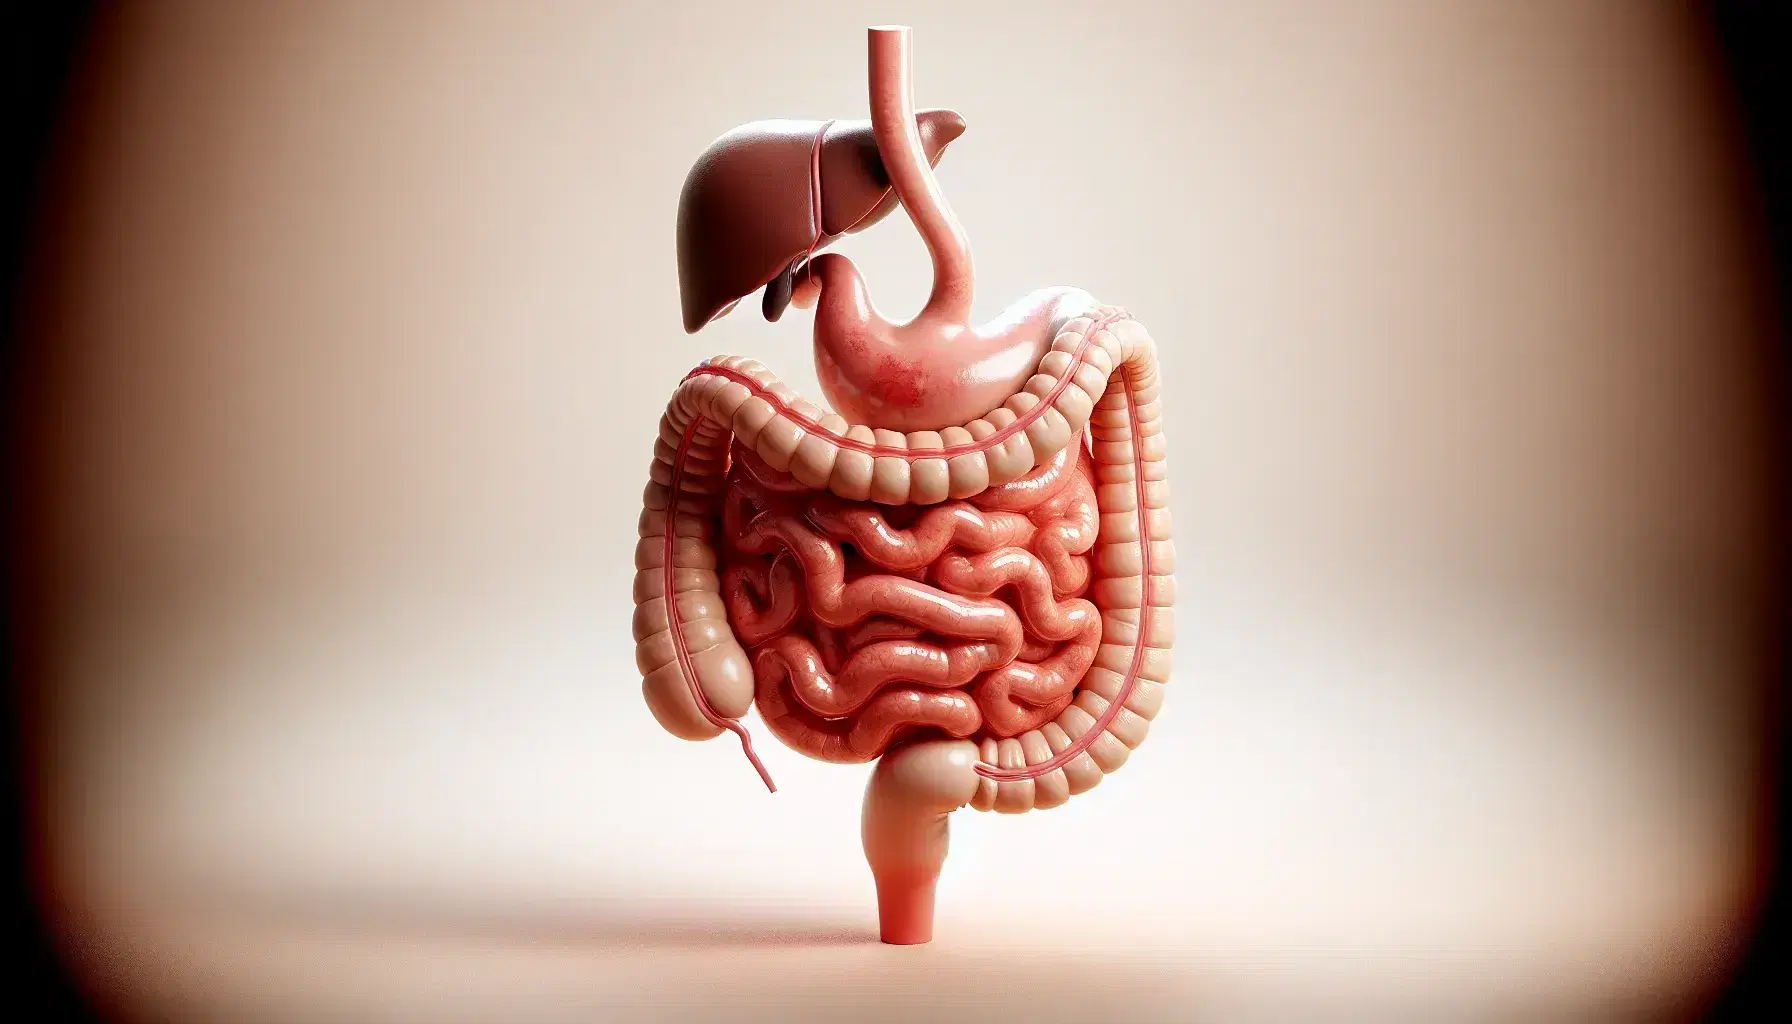 Modelo anatómico detallado del sistema gastrointestinal humano con esófago, estómago, duodeno, páncreas, hígado, vesícula biliar y bazo sobre fondo claro.